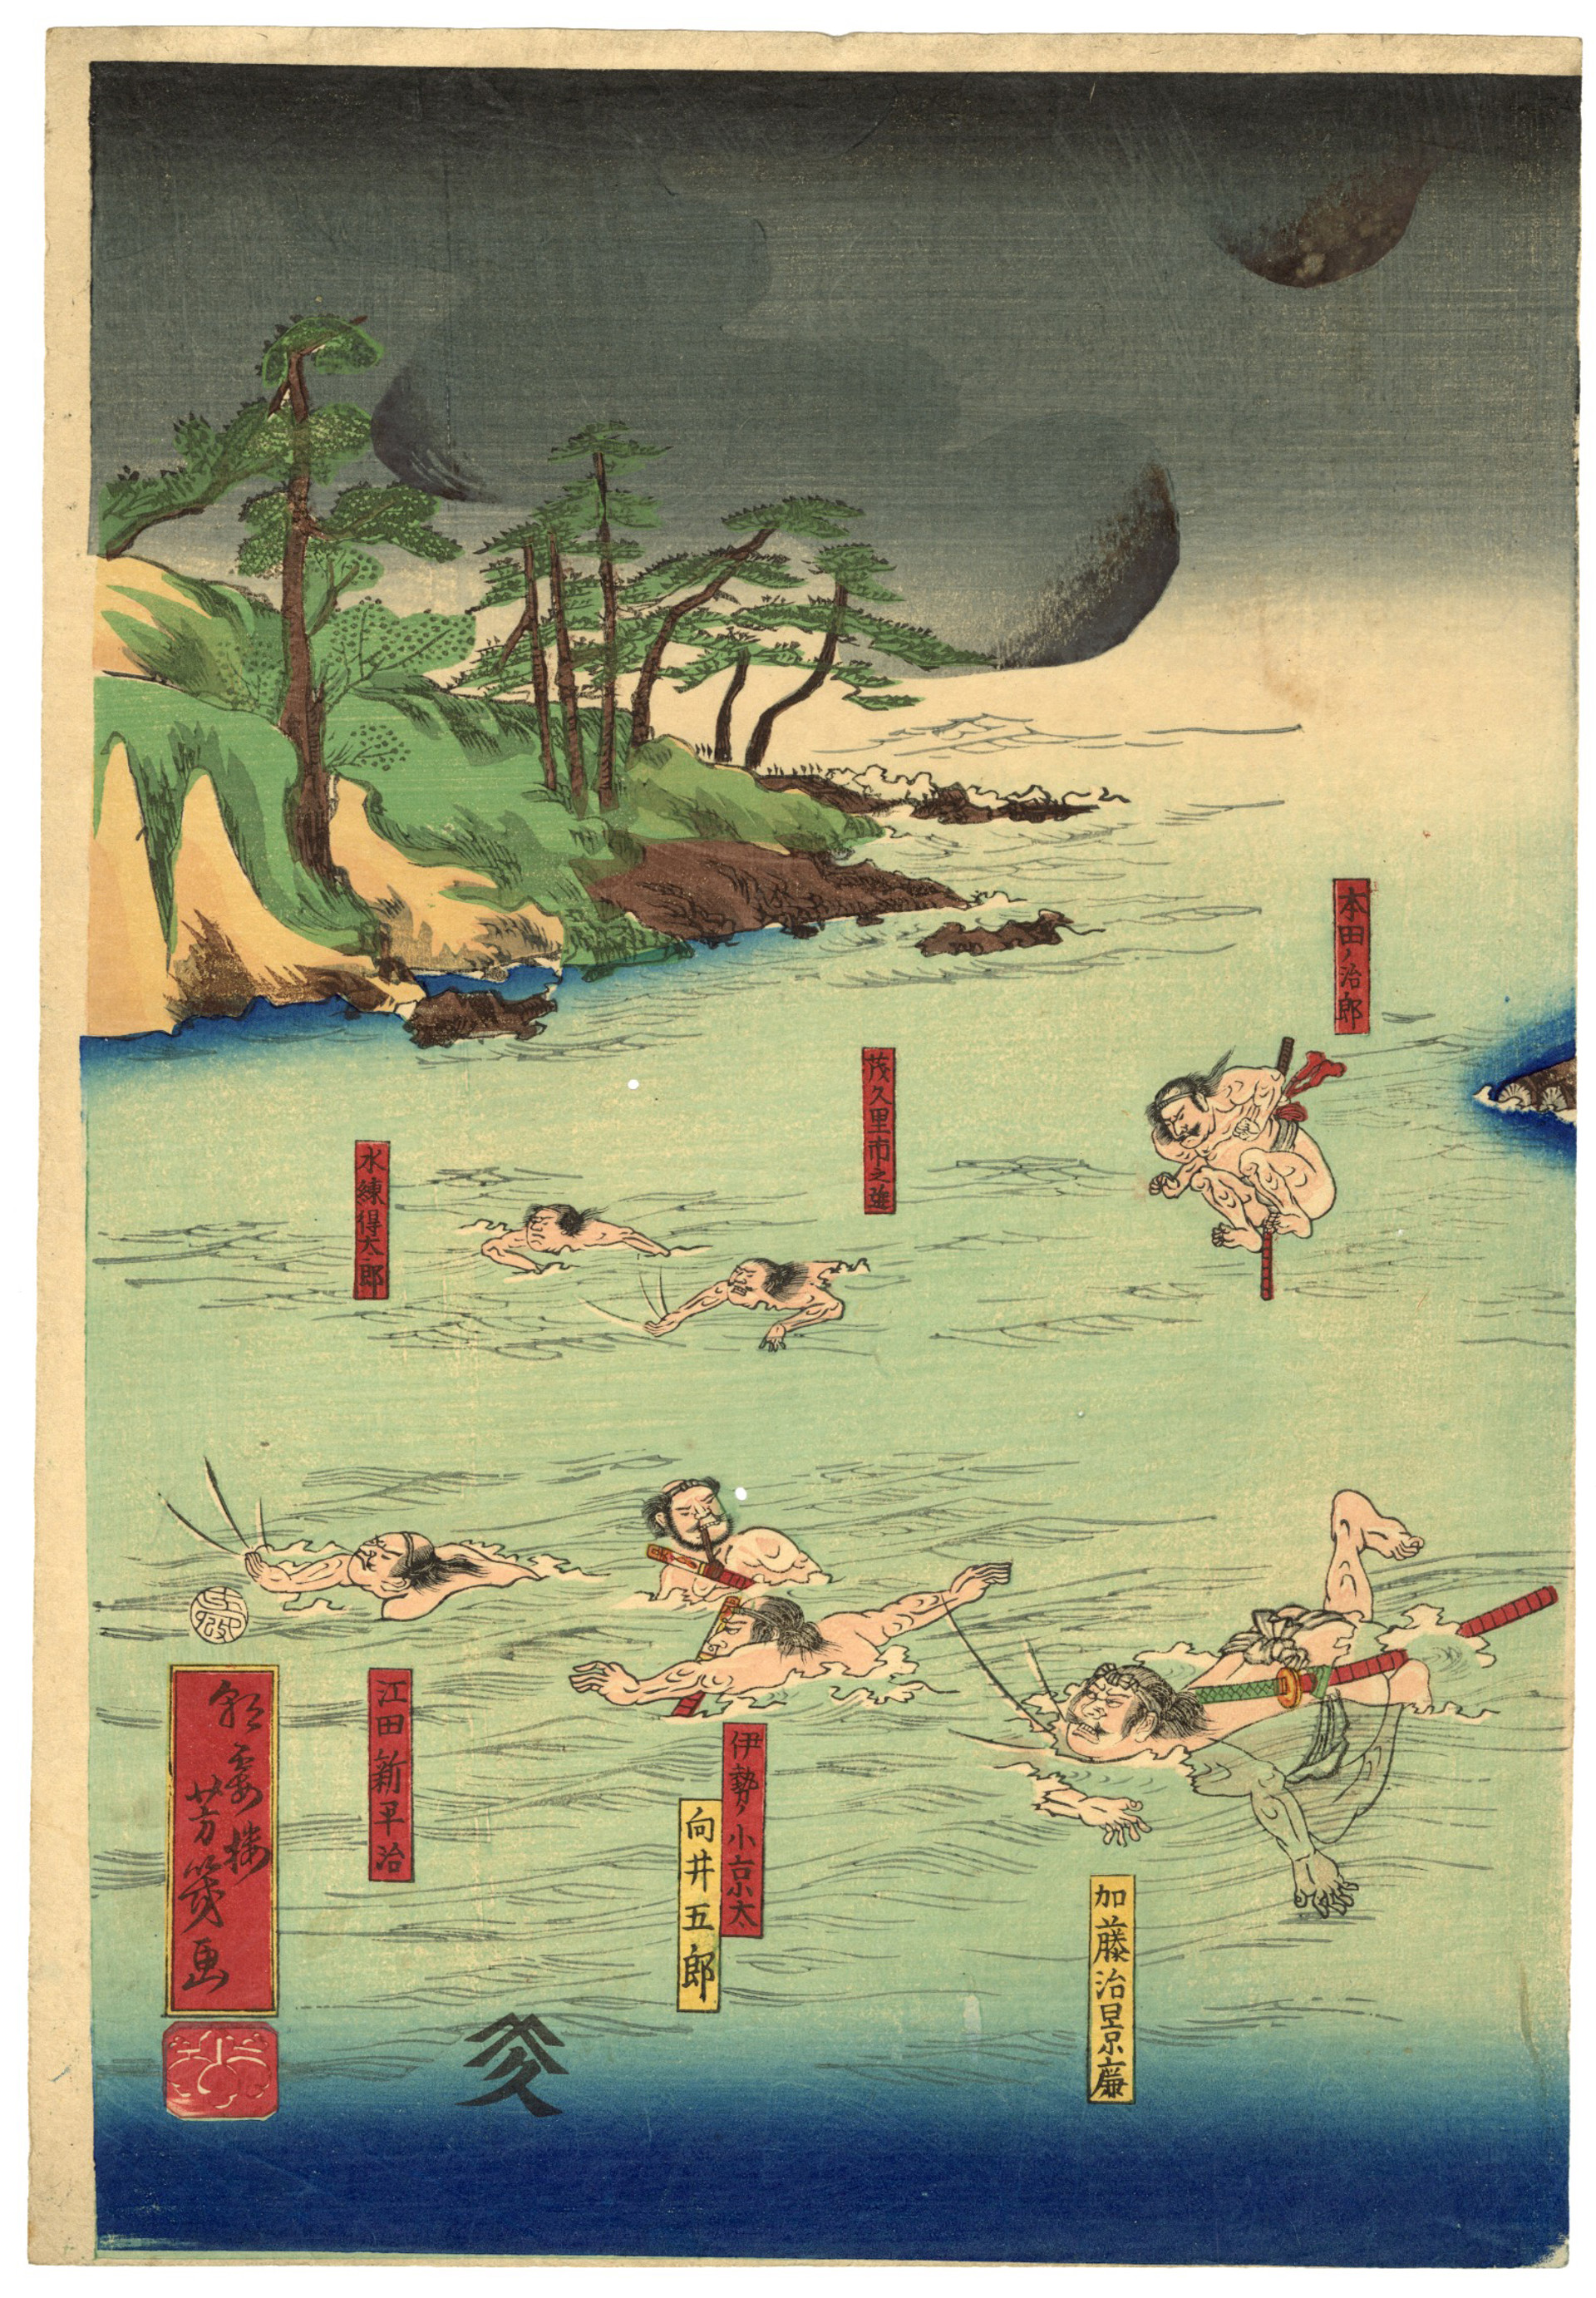 Minamoto no Yoritomo Crosses the Uji River on a Raft and defeats the Taira by Yoshi-iku